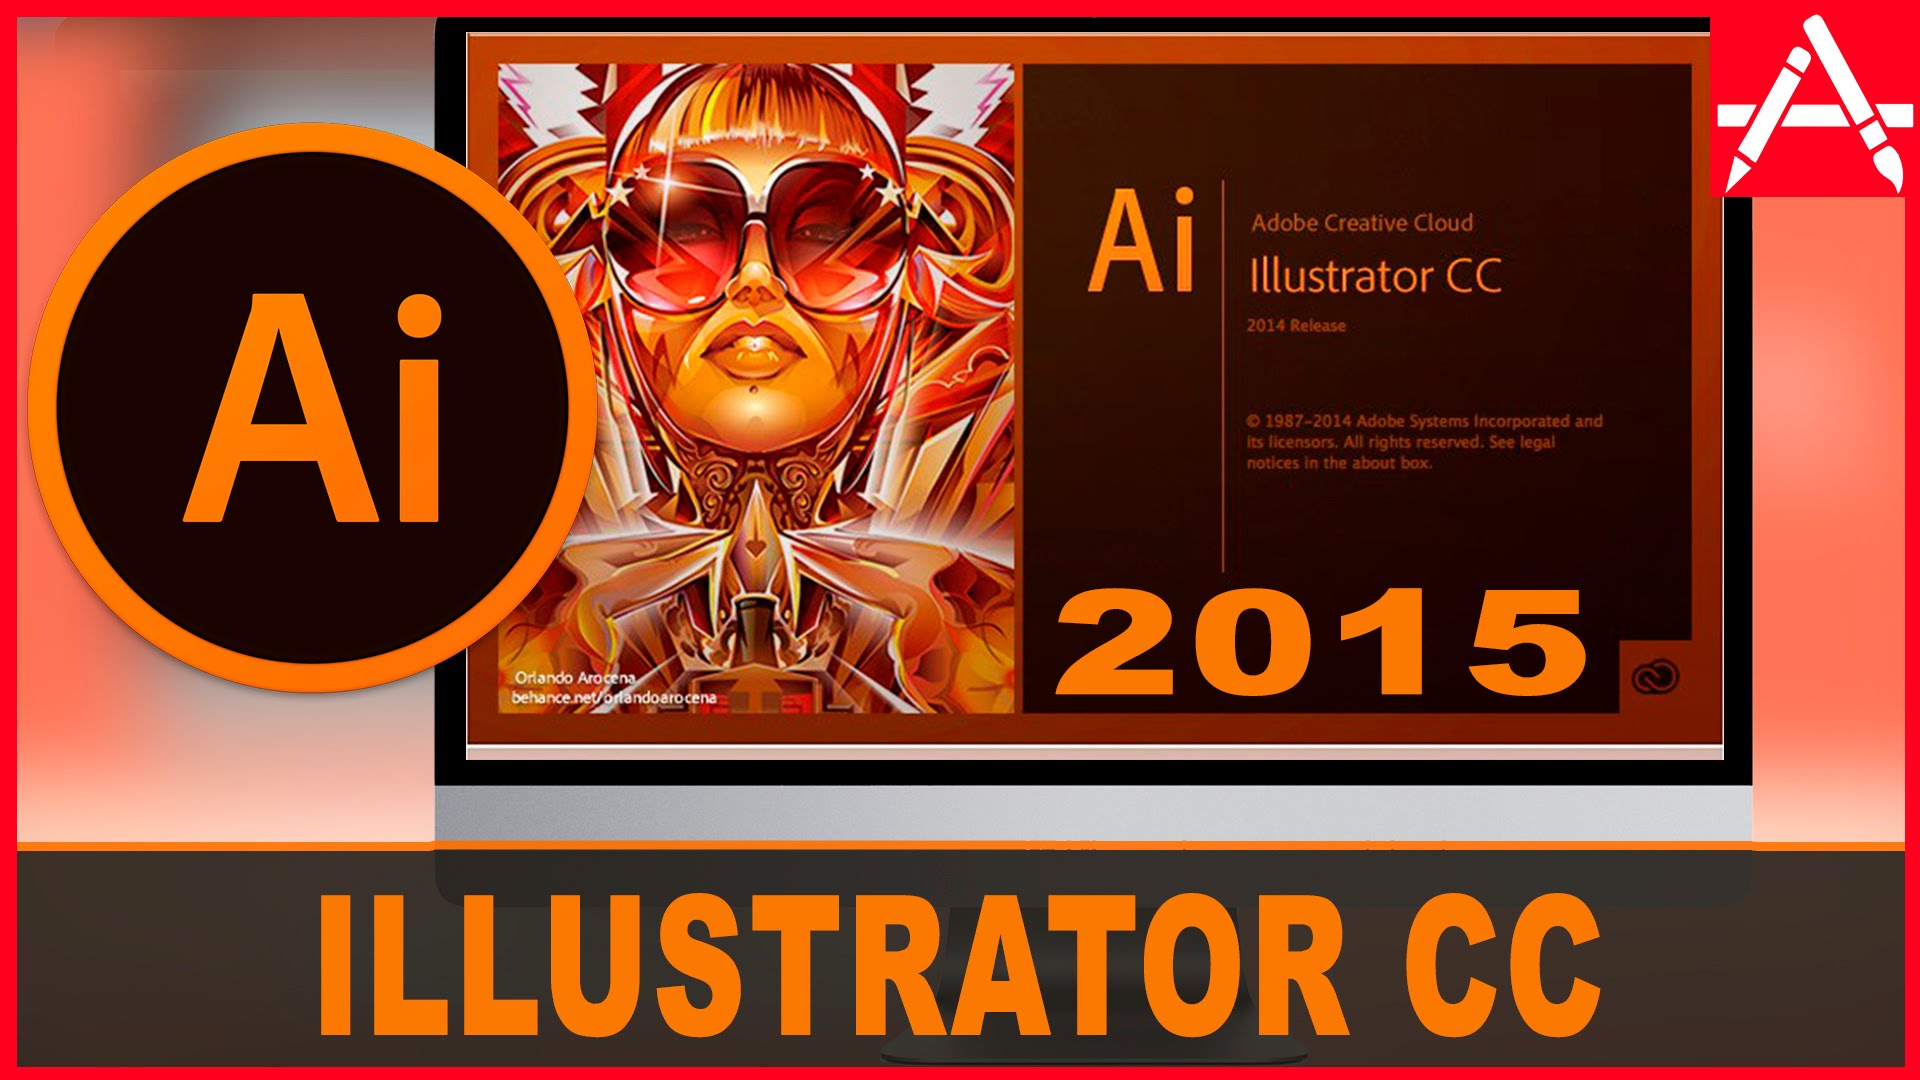 Download và cài đặt Adobe illustrator CC 2015 Full bản quyền windows 7/8/10 mới nhất